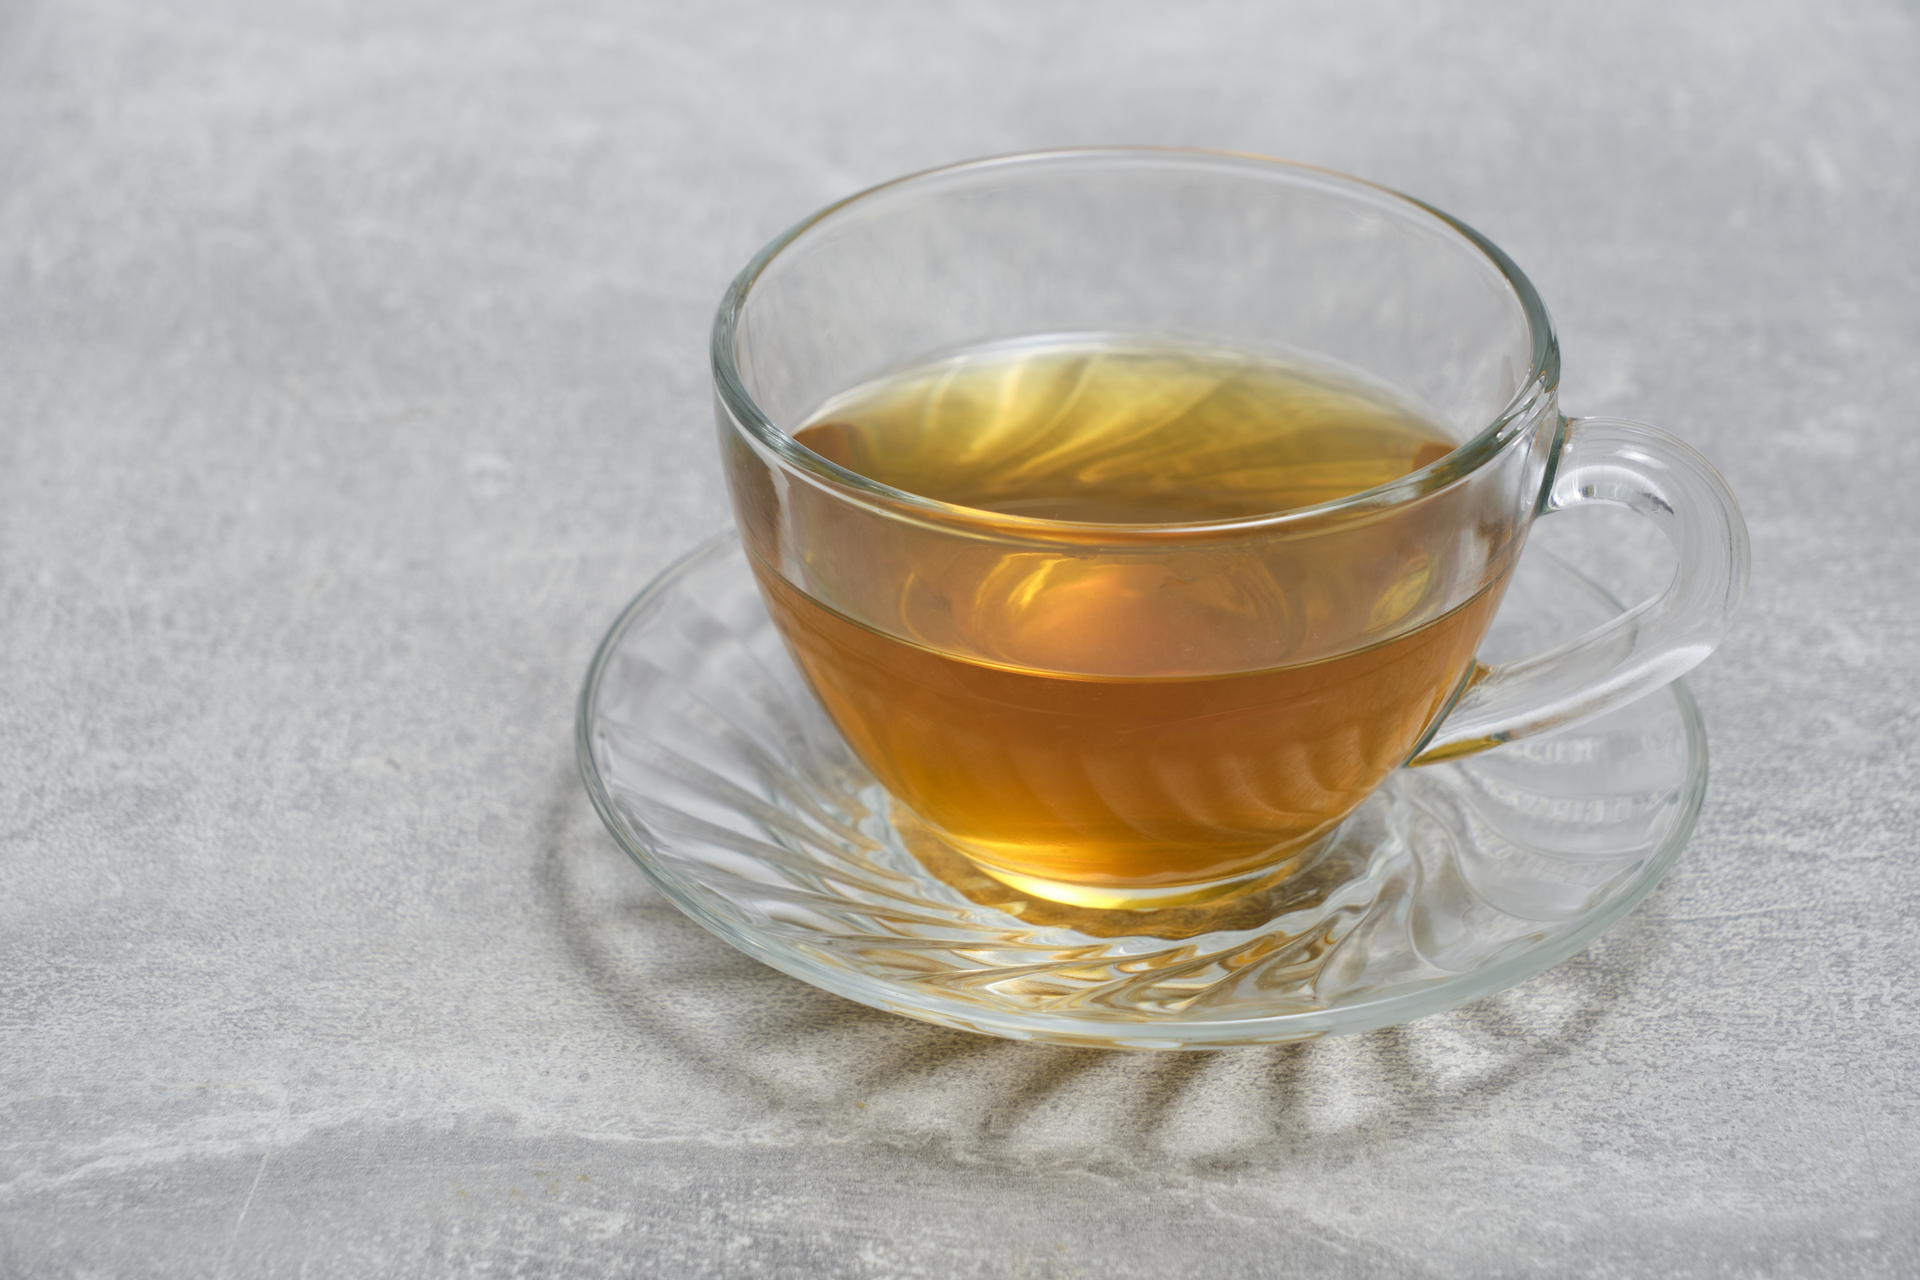 Na tym obrazku widoczna jest filiżanka z aromatyczną herbatą z morwy białej. Napar ma delikatny, jasny kolor, a jego subtelny zapach wabi do degustacji. Ta wyjątkowa herbata nie tylko przynosi przyjemność podczas picia, ale także znana jest ze swoich korzystnych właściwości zdrowotnych, takich jak wspomaganie trawienia i poprawa kondycji skóry